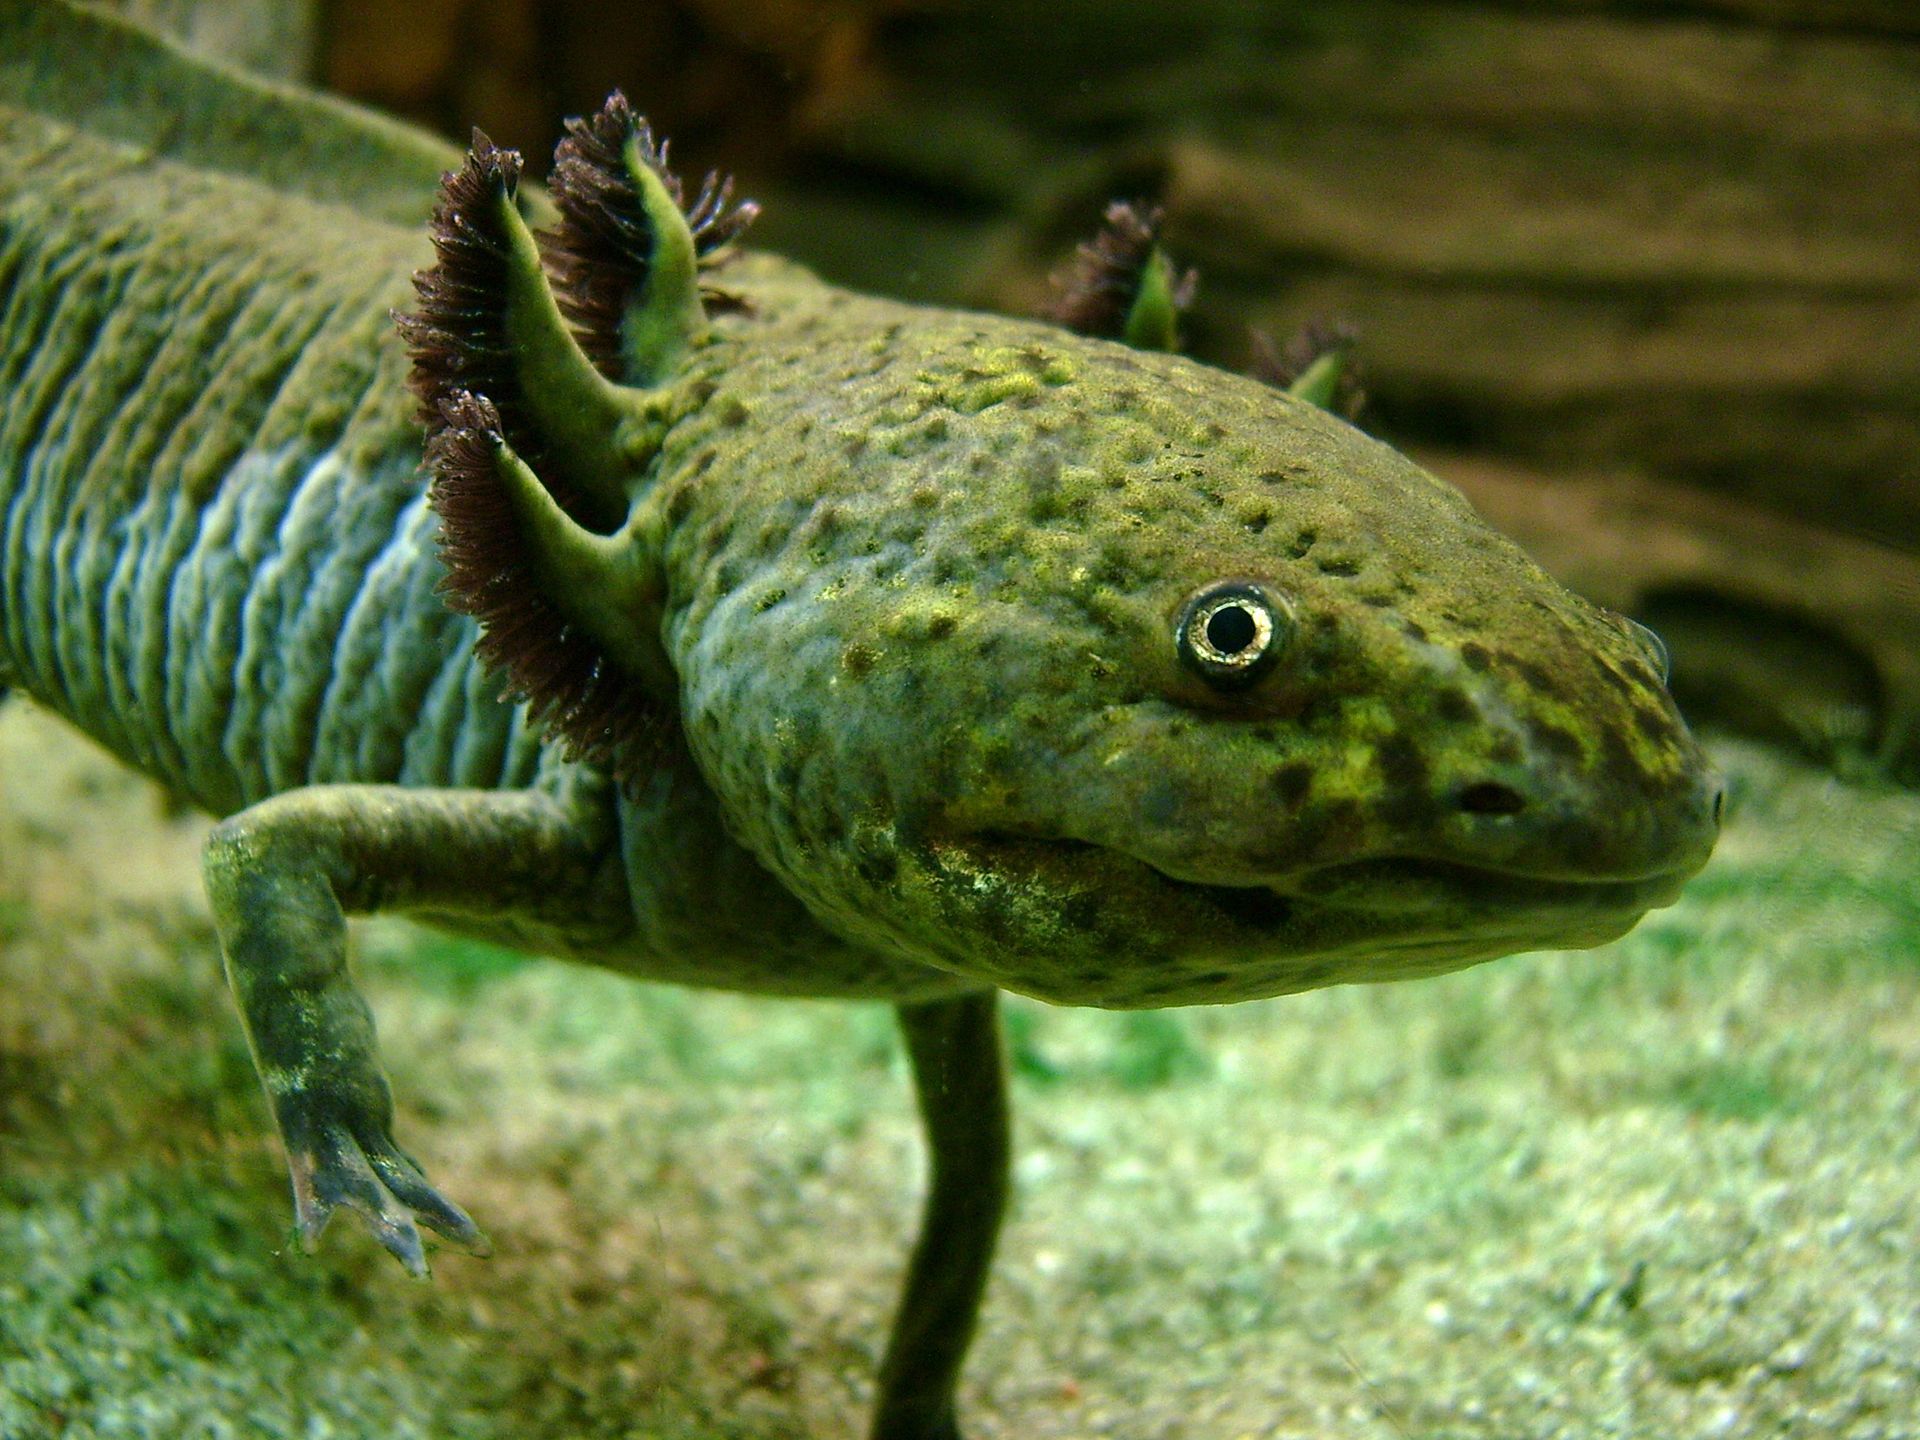 The Novel Axolotl: A Conservation Paradox